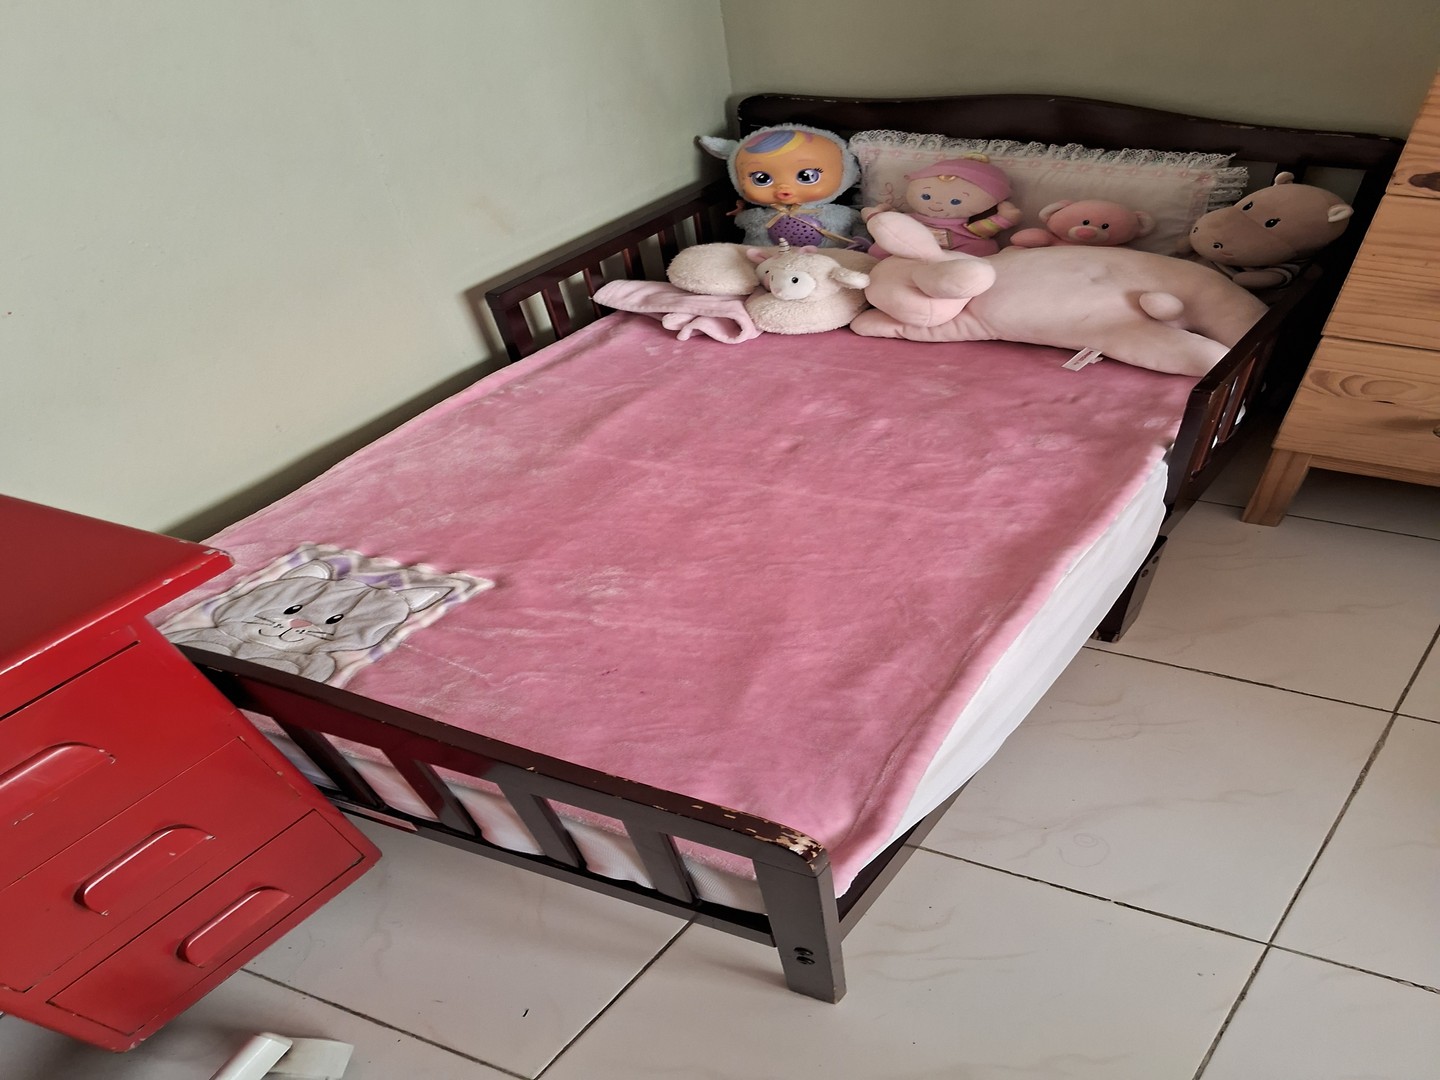 muebles - Vendo cama para niños de 1 a 5 años ( cama todler) con su colchón nuevo incluido 1